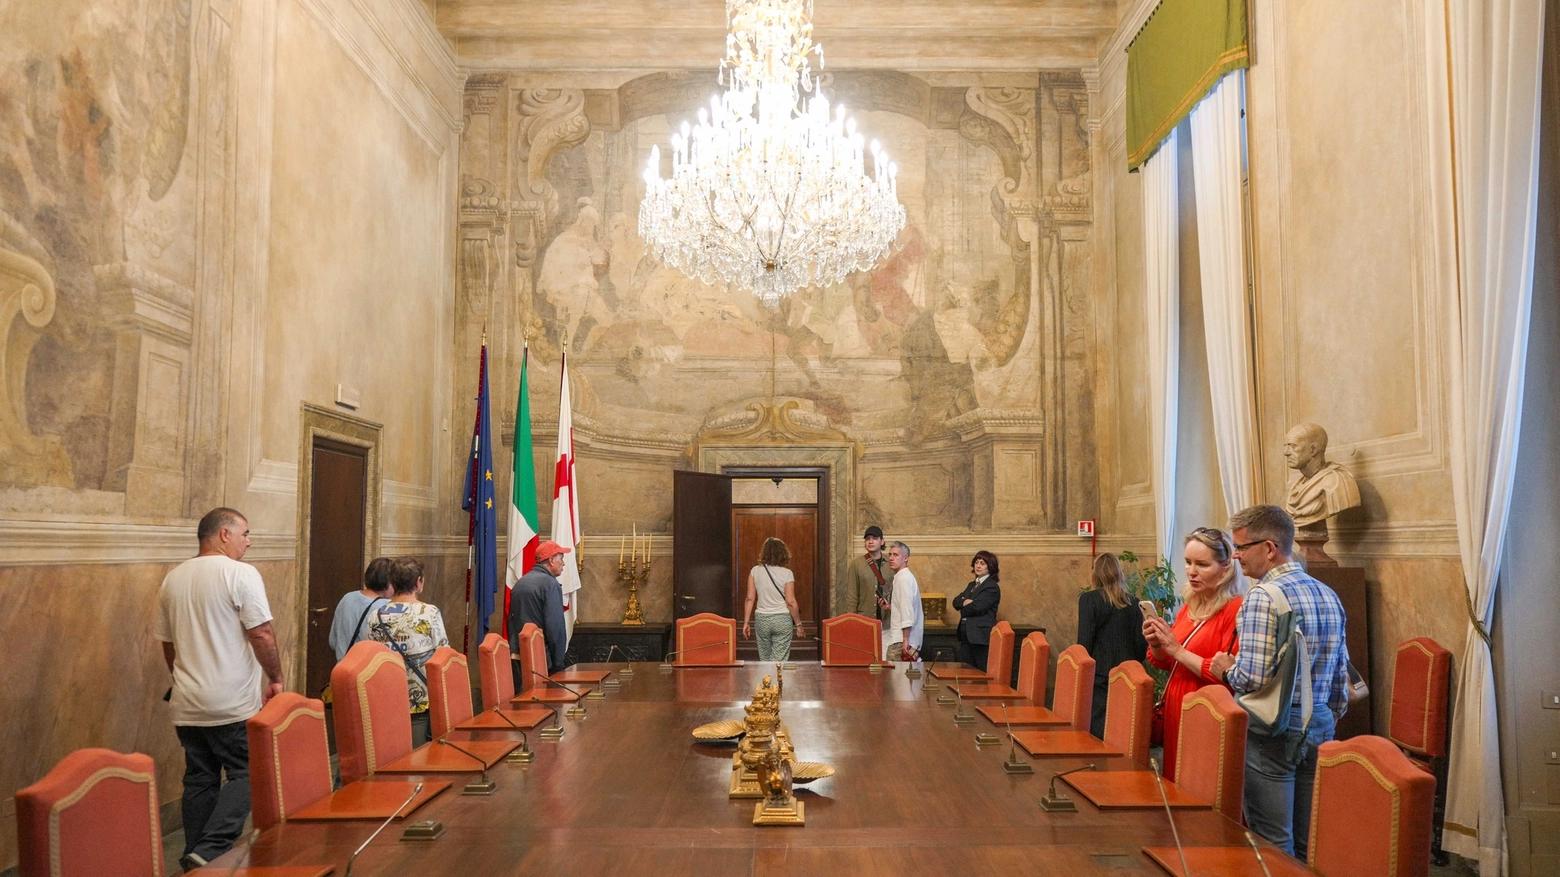 In occasione della Festa della Repubblica sarà possibile scoprire le sale di Palazzo Marino e di molti altri luoghi di interesse culturale e architettonico